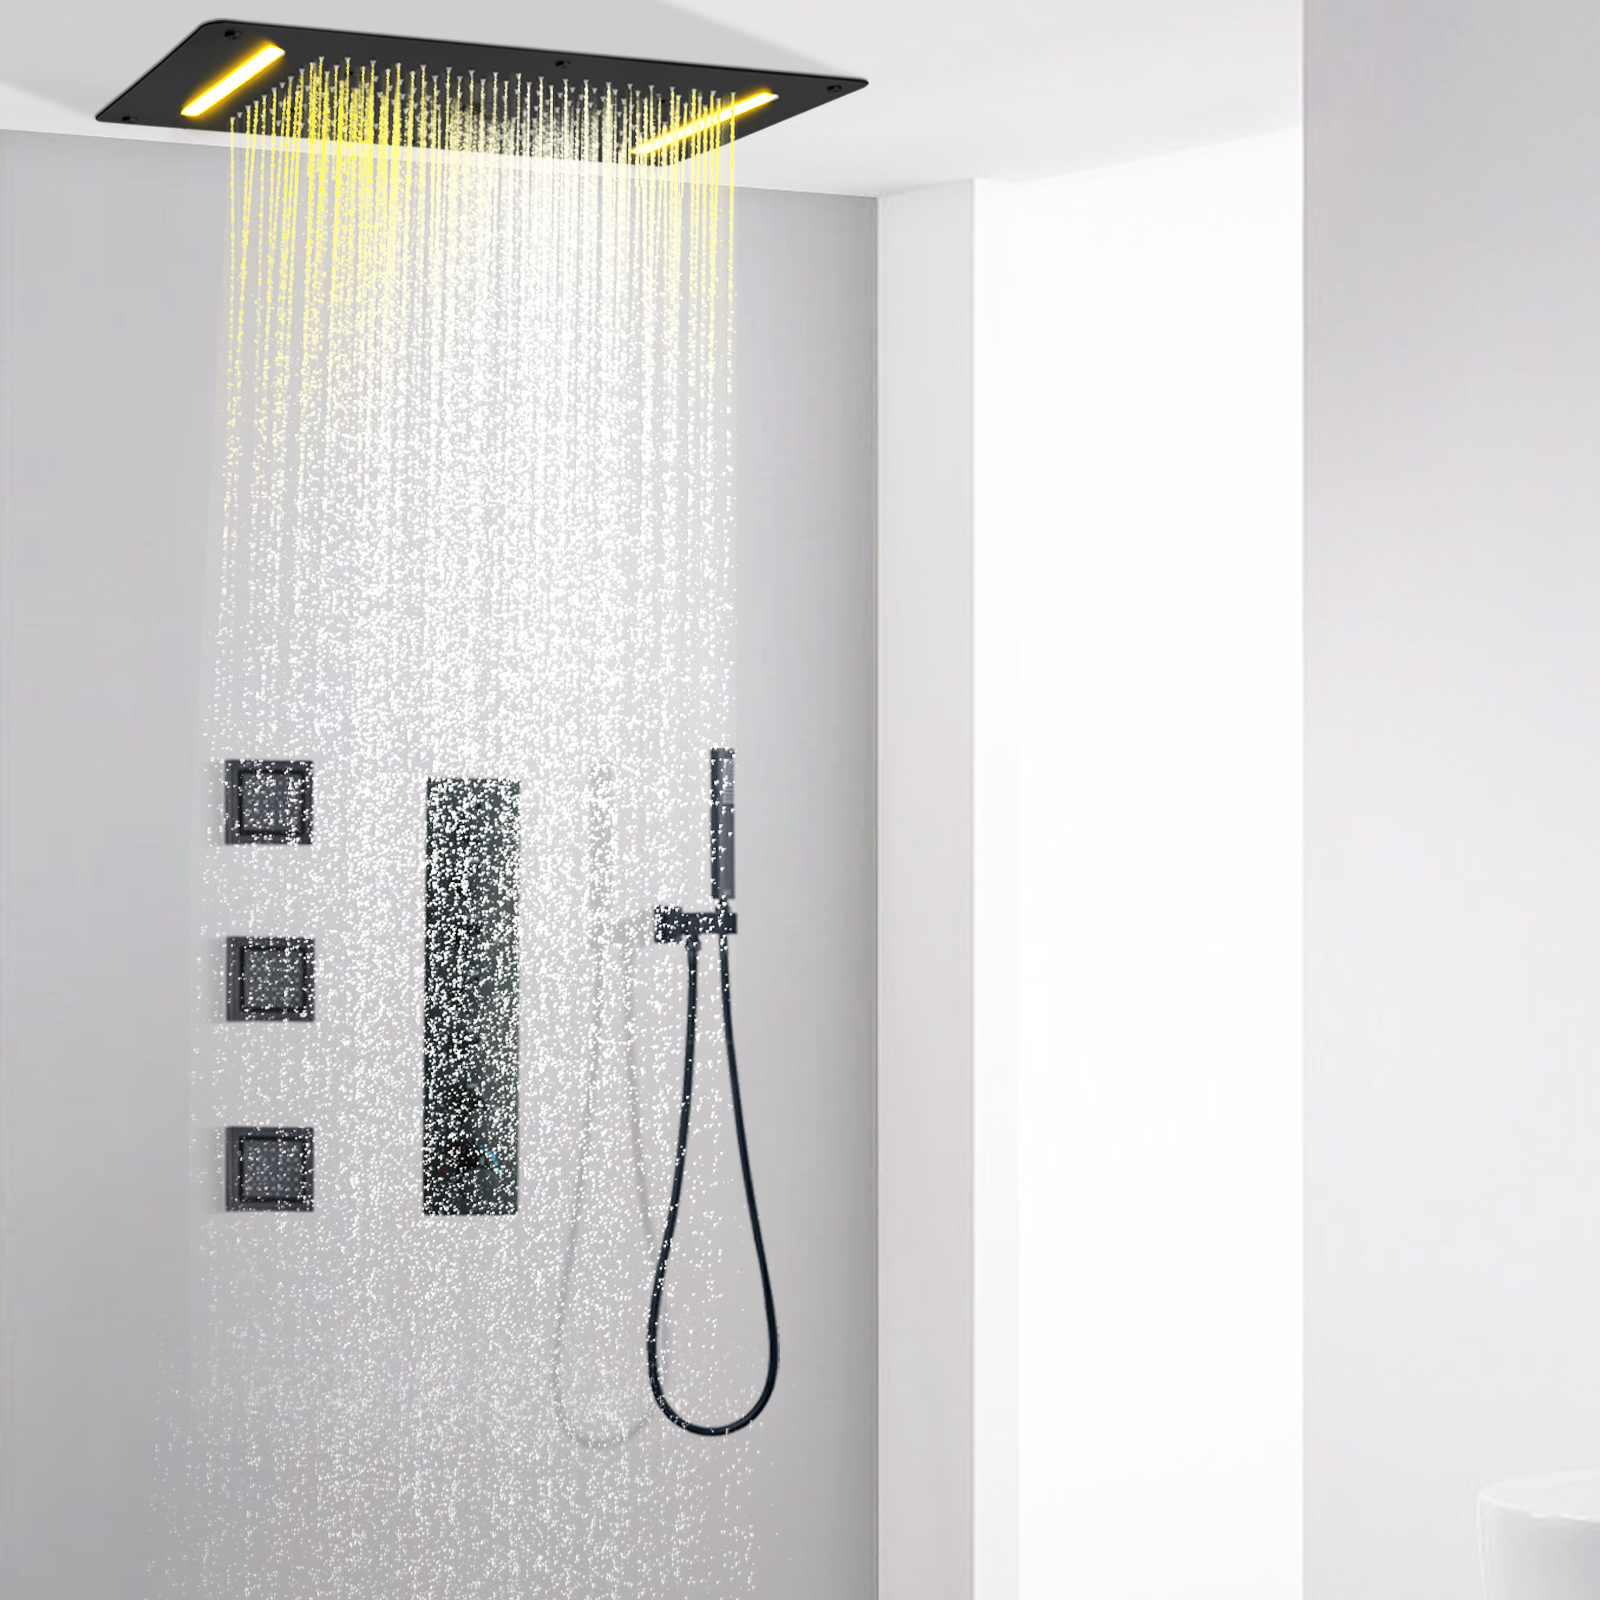 Sistema de grifo de ducha de pared de latón negro mate, juego de cabezal de ducha multifuncional con columna de lluvia de gran flujo y temperatura constante para baño